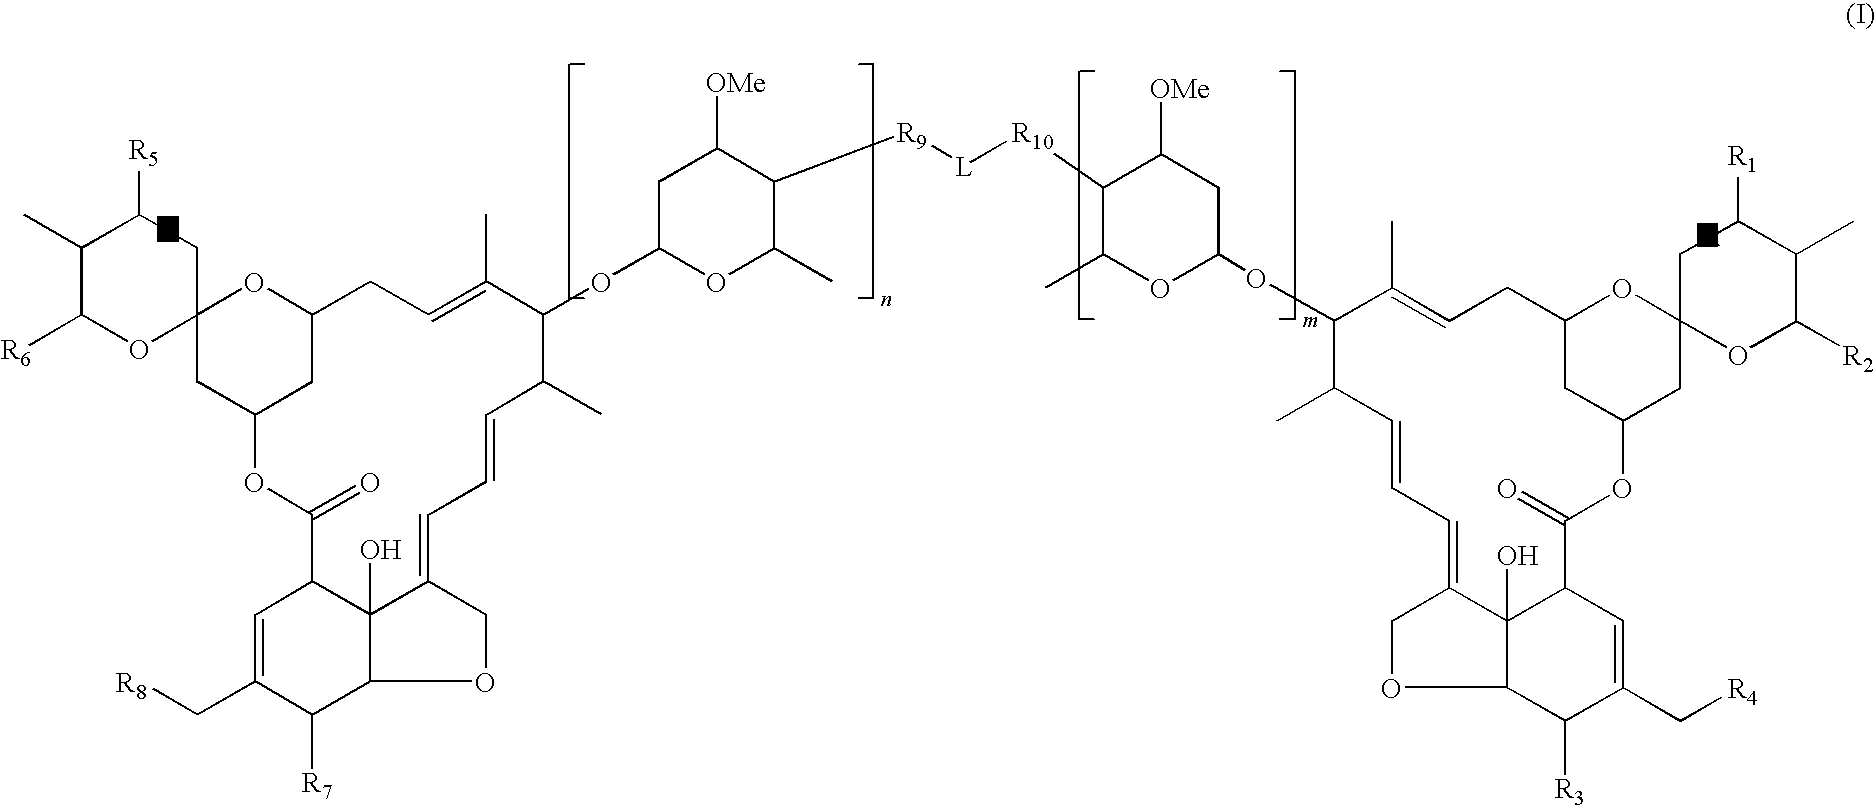 Dimeric avermectin and milbemycin derivatives